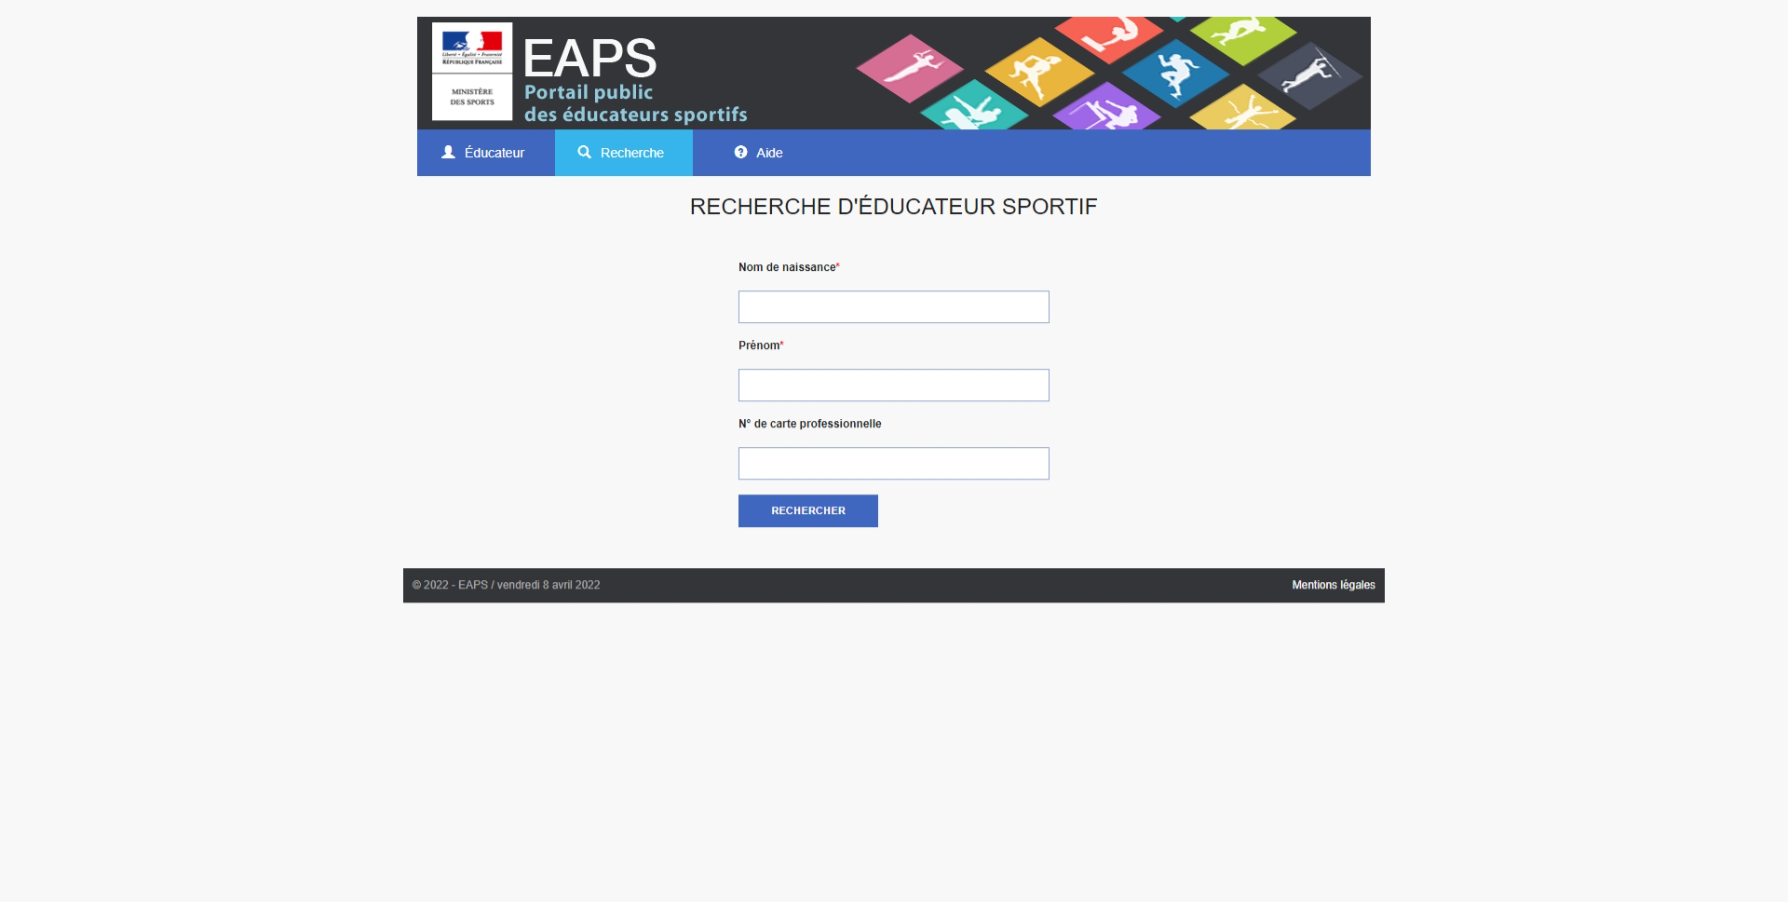 Copie écran du site internet du Portail public des éducateurs sportifs EAPS